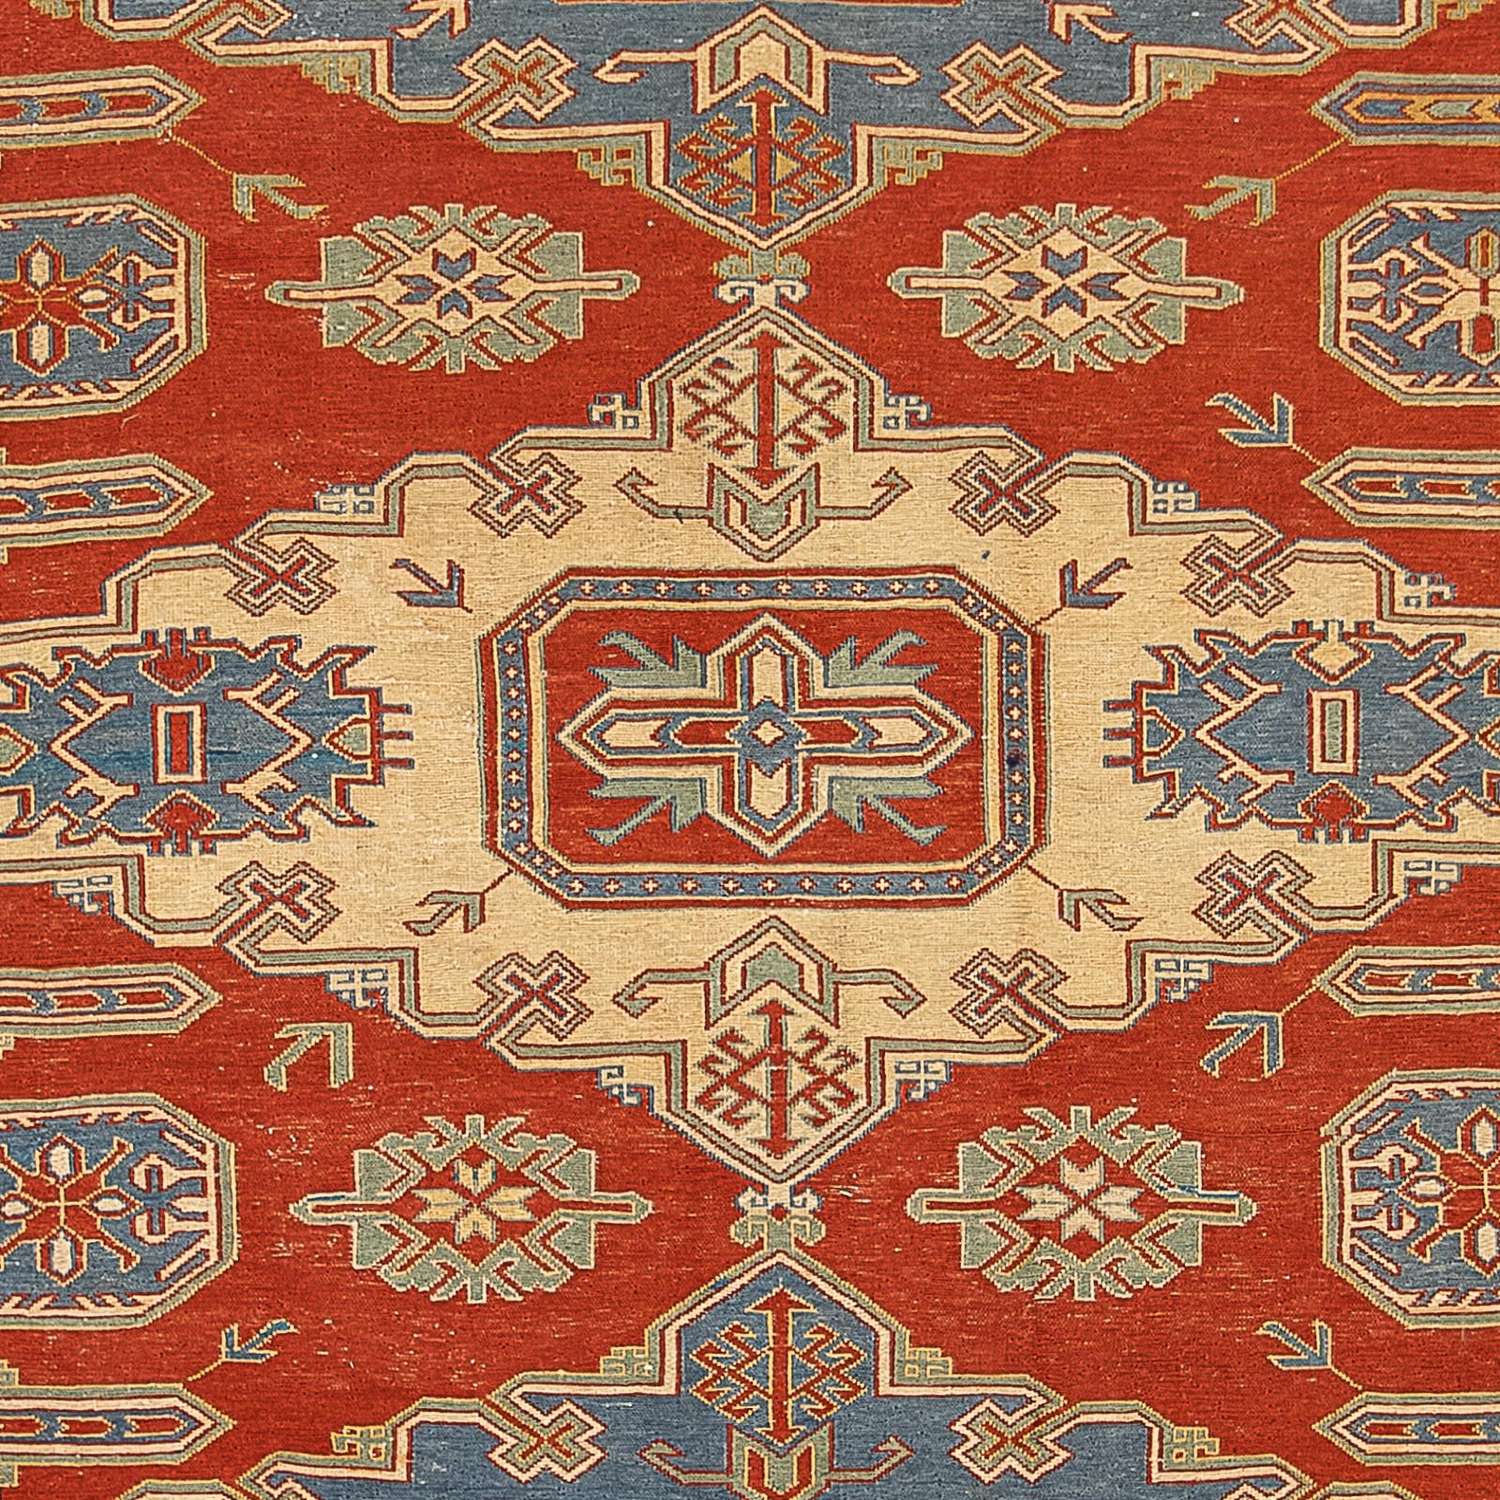 Kelim tapijt - Oosters - 265 x 200 cm - donkerrood